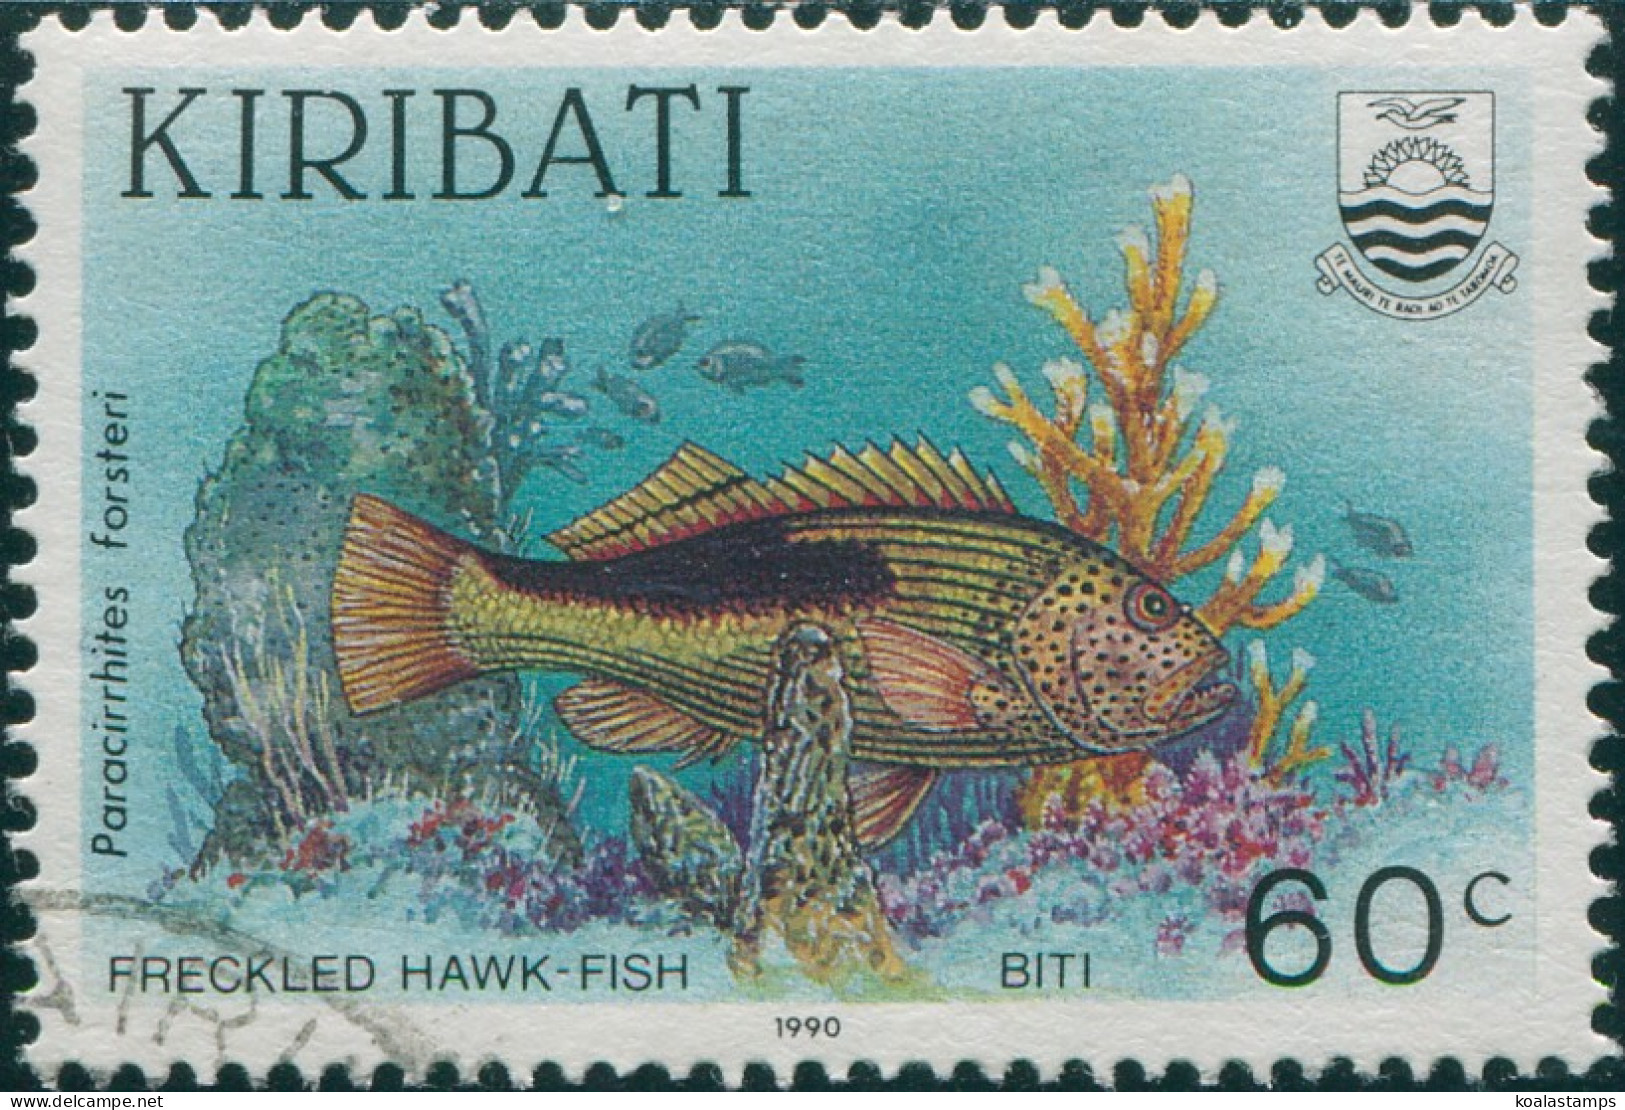 Kiribati 1990 SG336 60c Freckled Hawk-fish FU - Kiribati (1979-...)